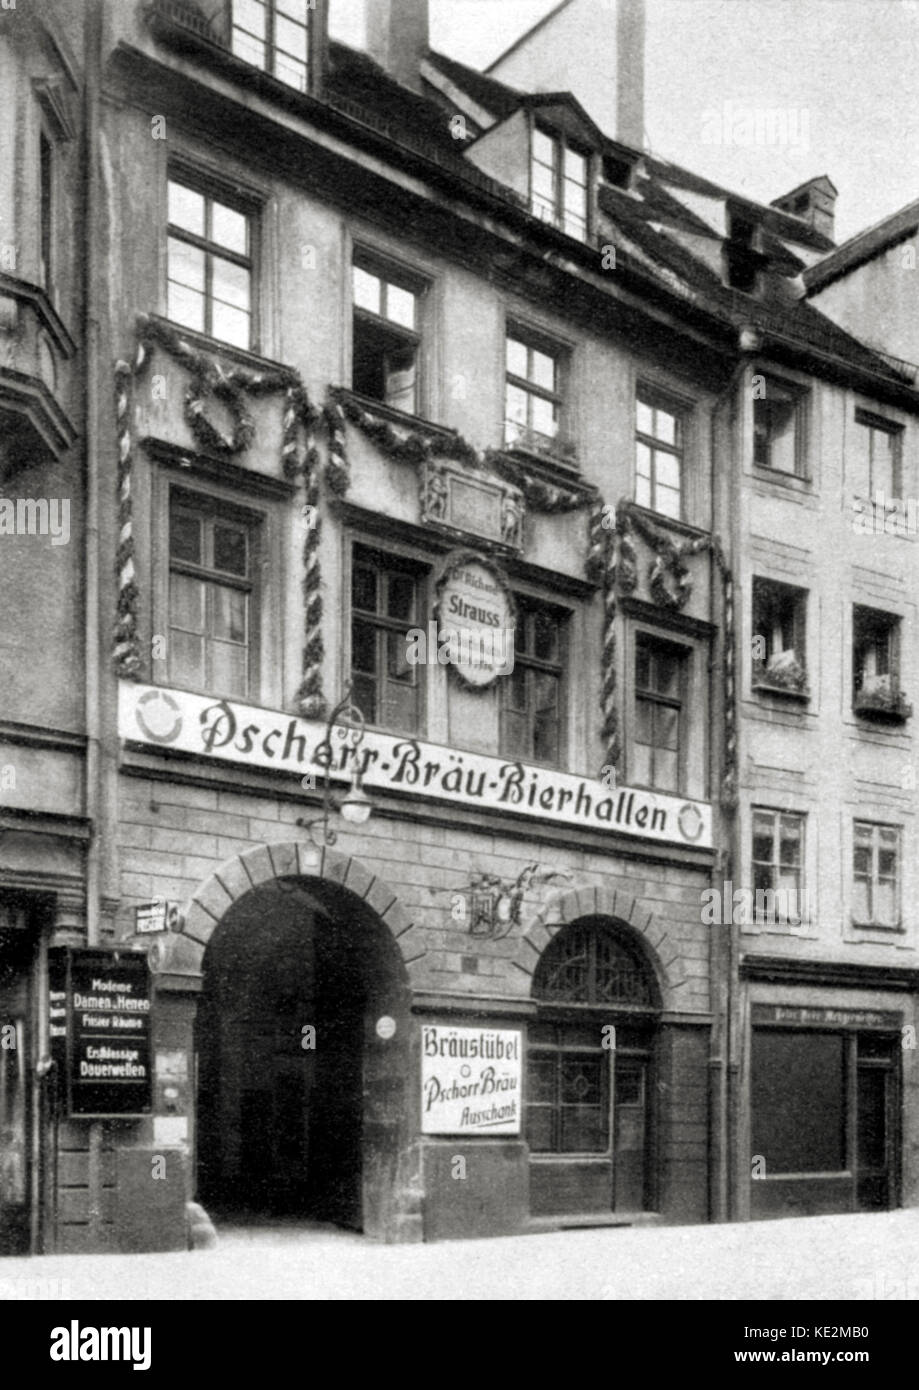 Richard Strauss 's lugar de nacimiento en Munich. Compositor y director de orquesta alemán. 11 de junio de 1864 - 8 de septiembre de 1949. Foto de stock